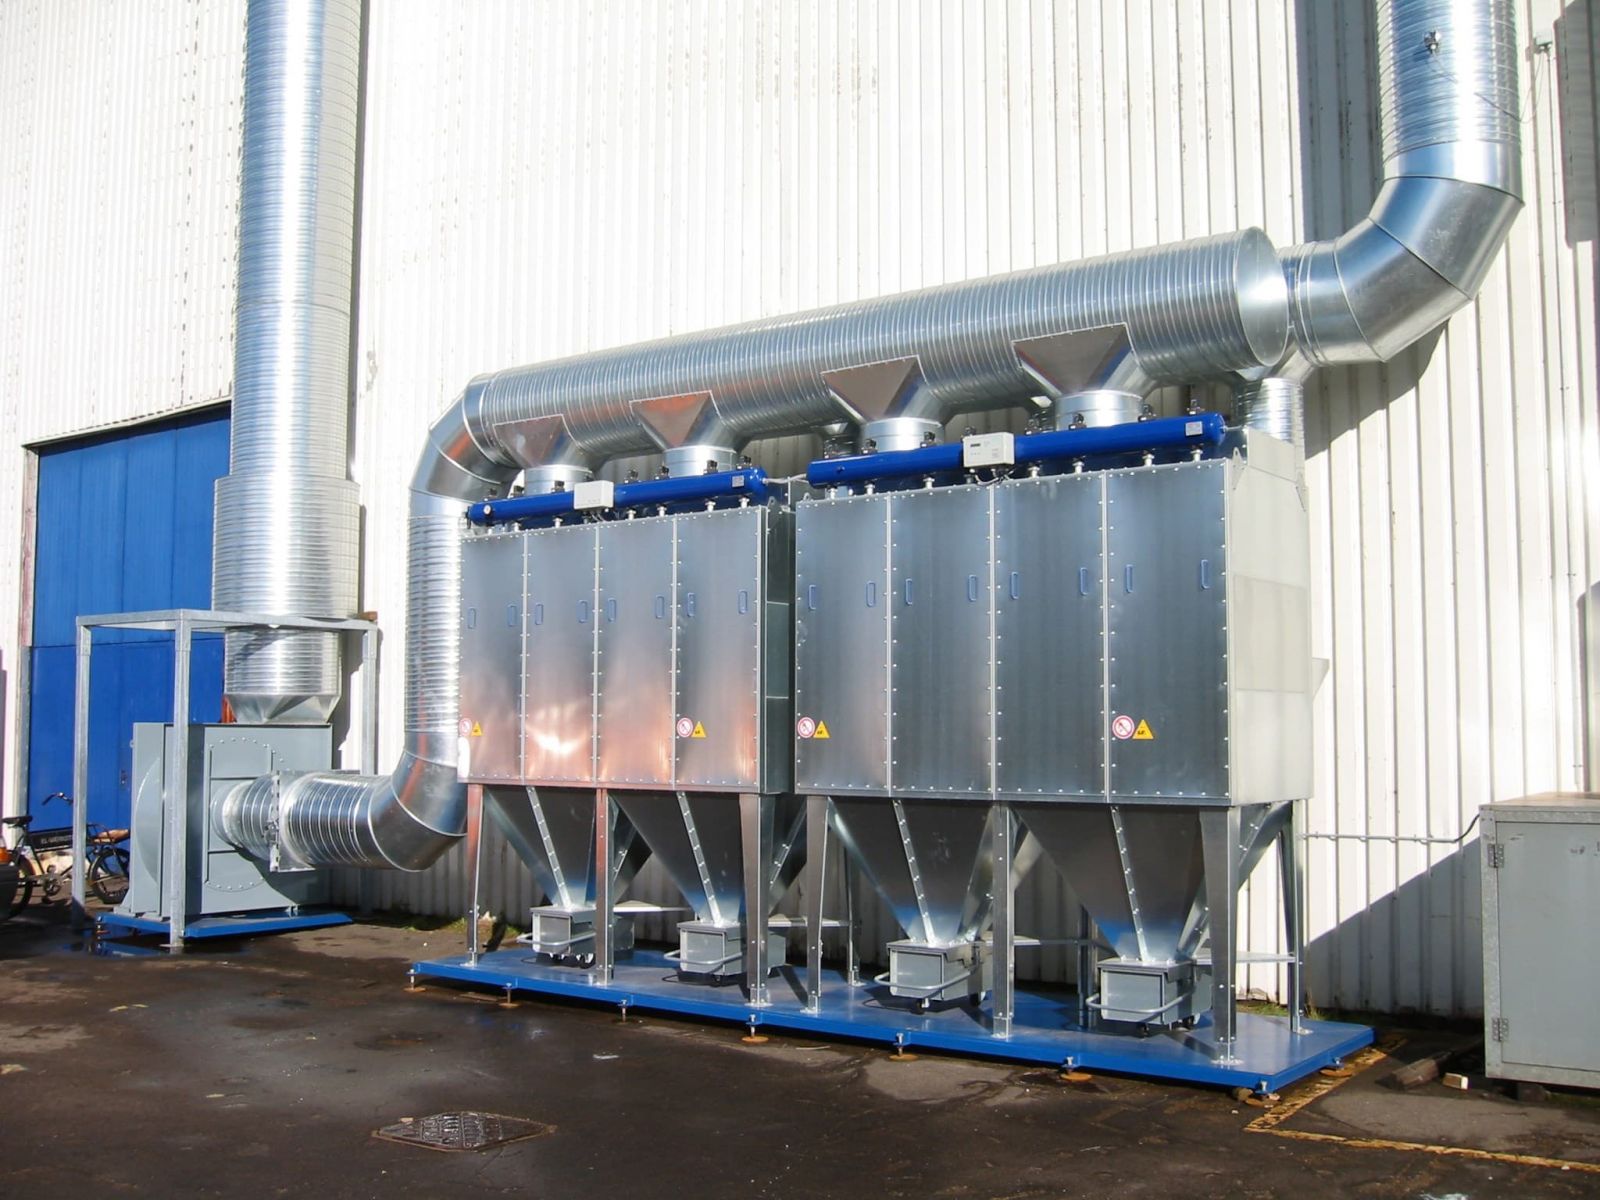 Xử lý khí thải nhà máy tại Long An